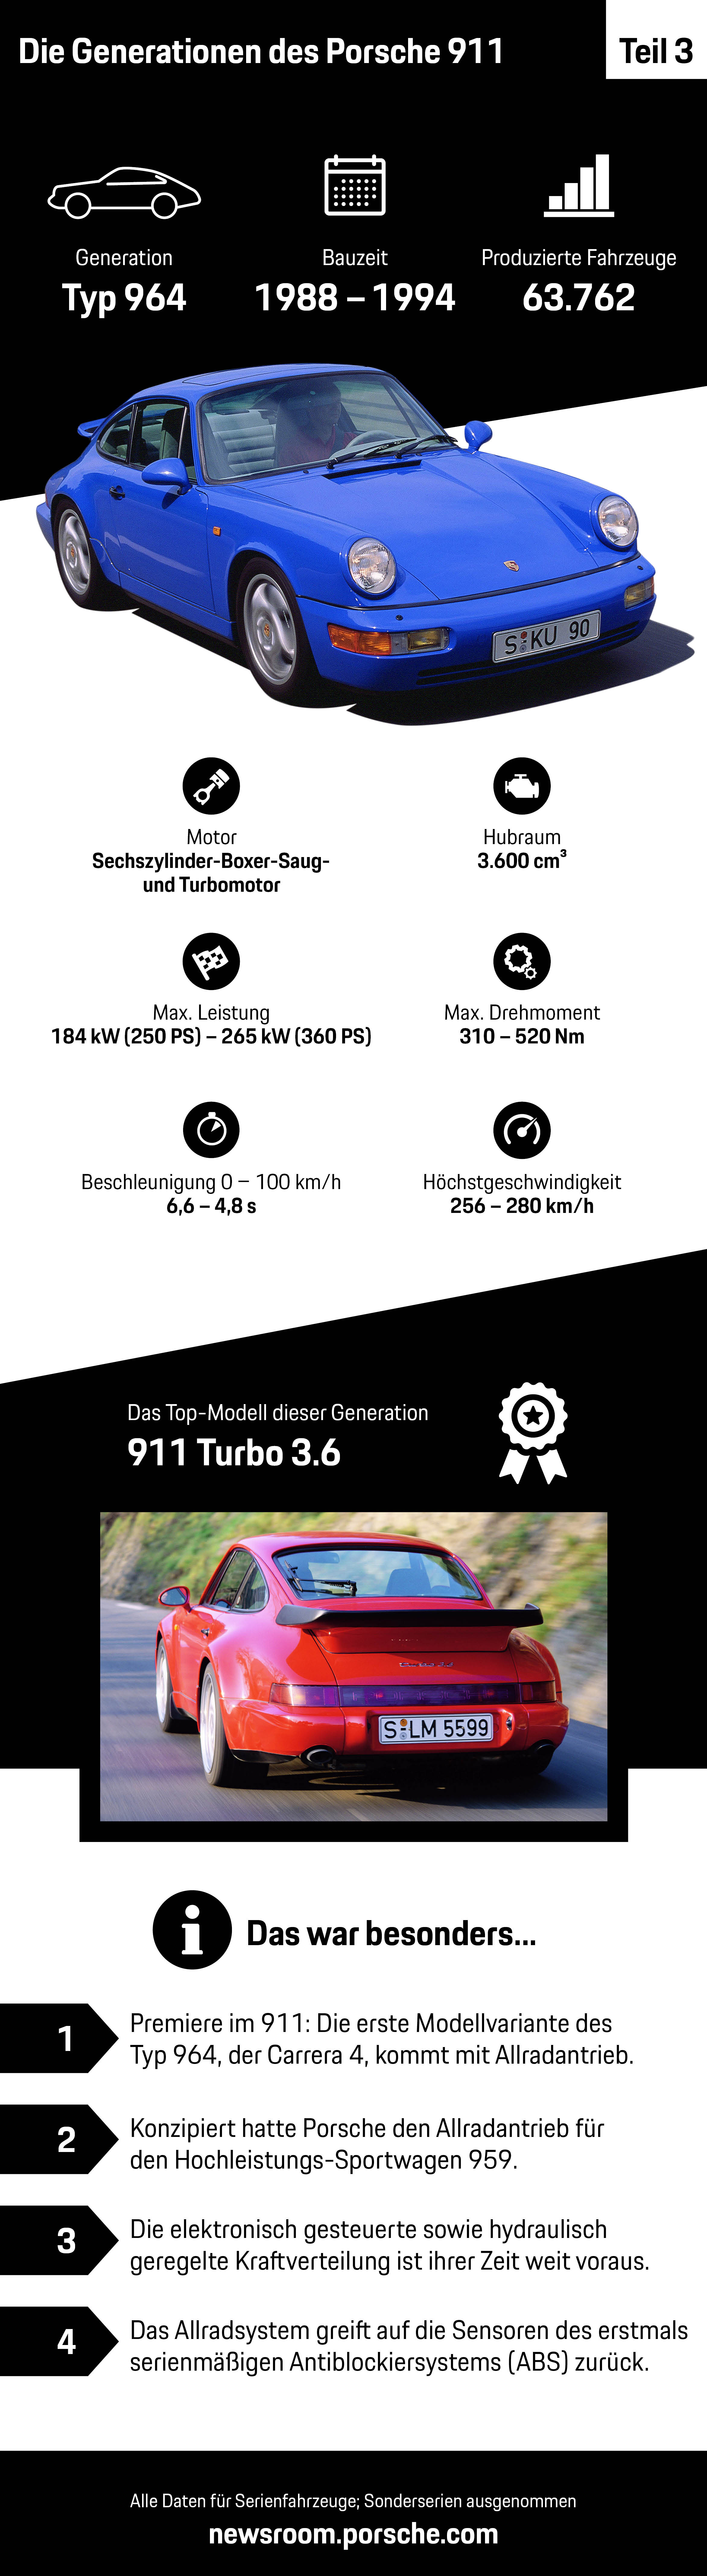 Die Generationen des Porsche 911 – Teil 3, Infografik, 2018, Porsche AG